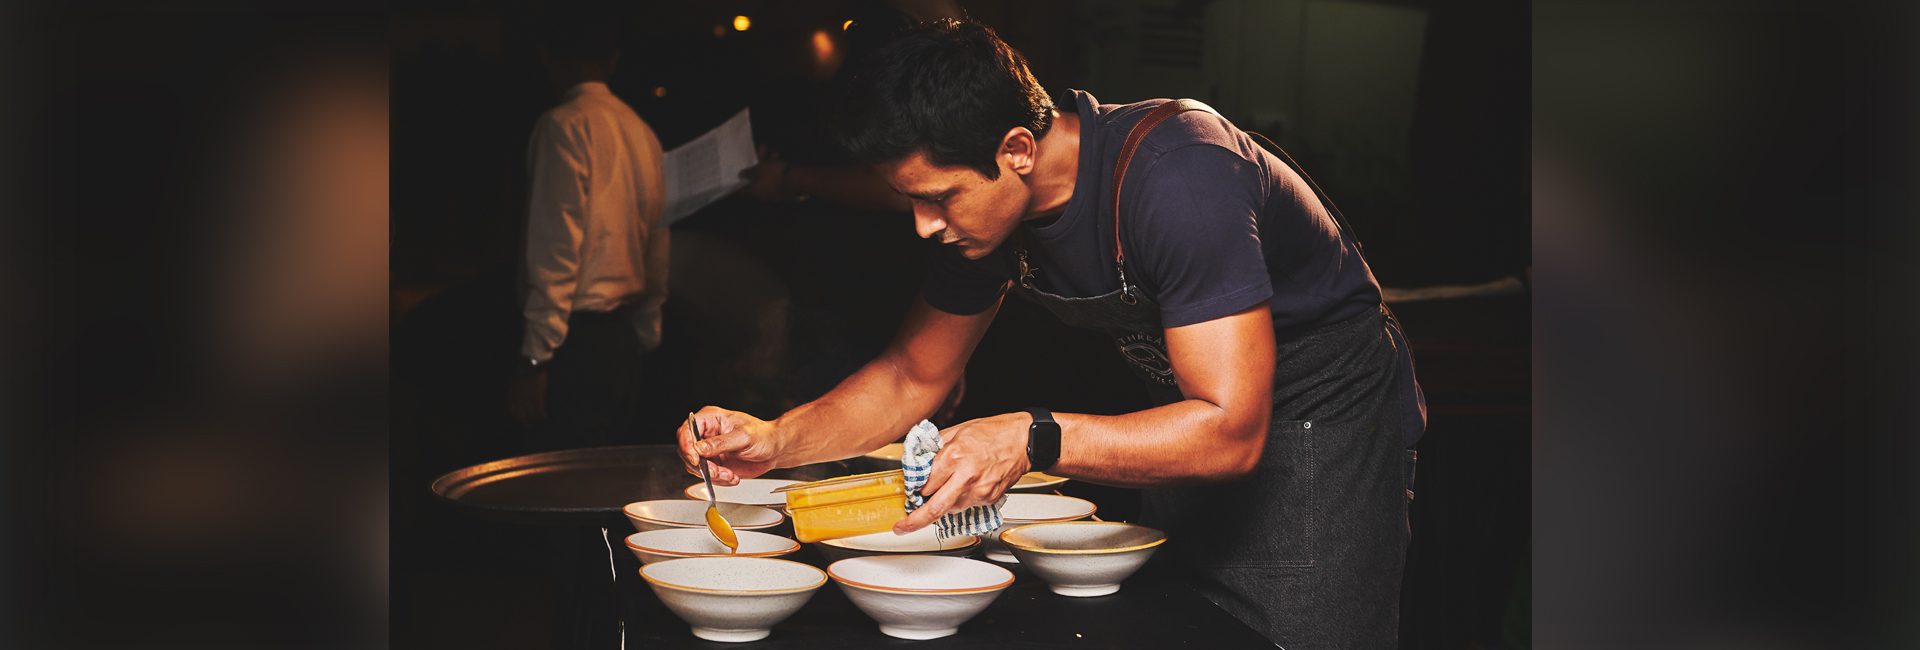 King Cannes: Đầu bếp Manu Chandra tỏa sáng tại liên hoan phim hàng đầu